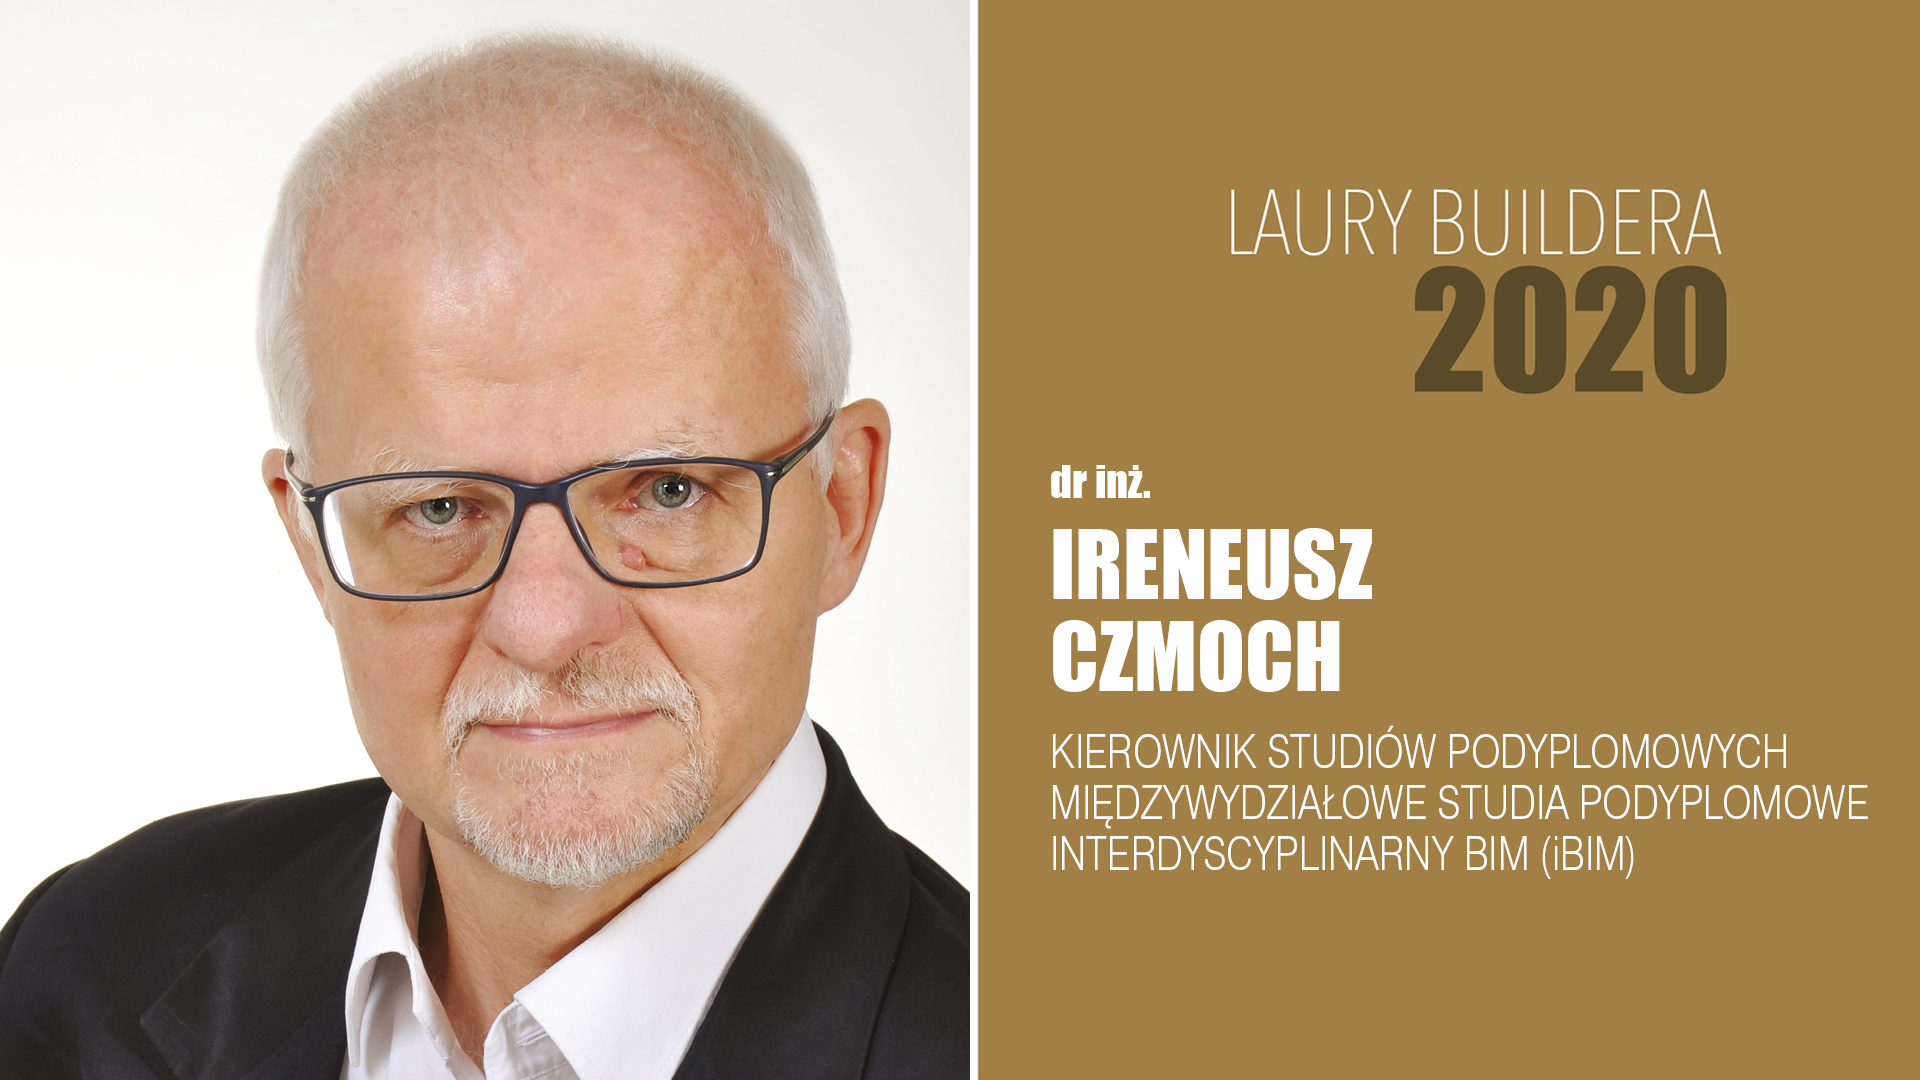 dr inż. Ireneusz Czmoch – LAURY BUILDERA 2020